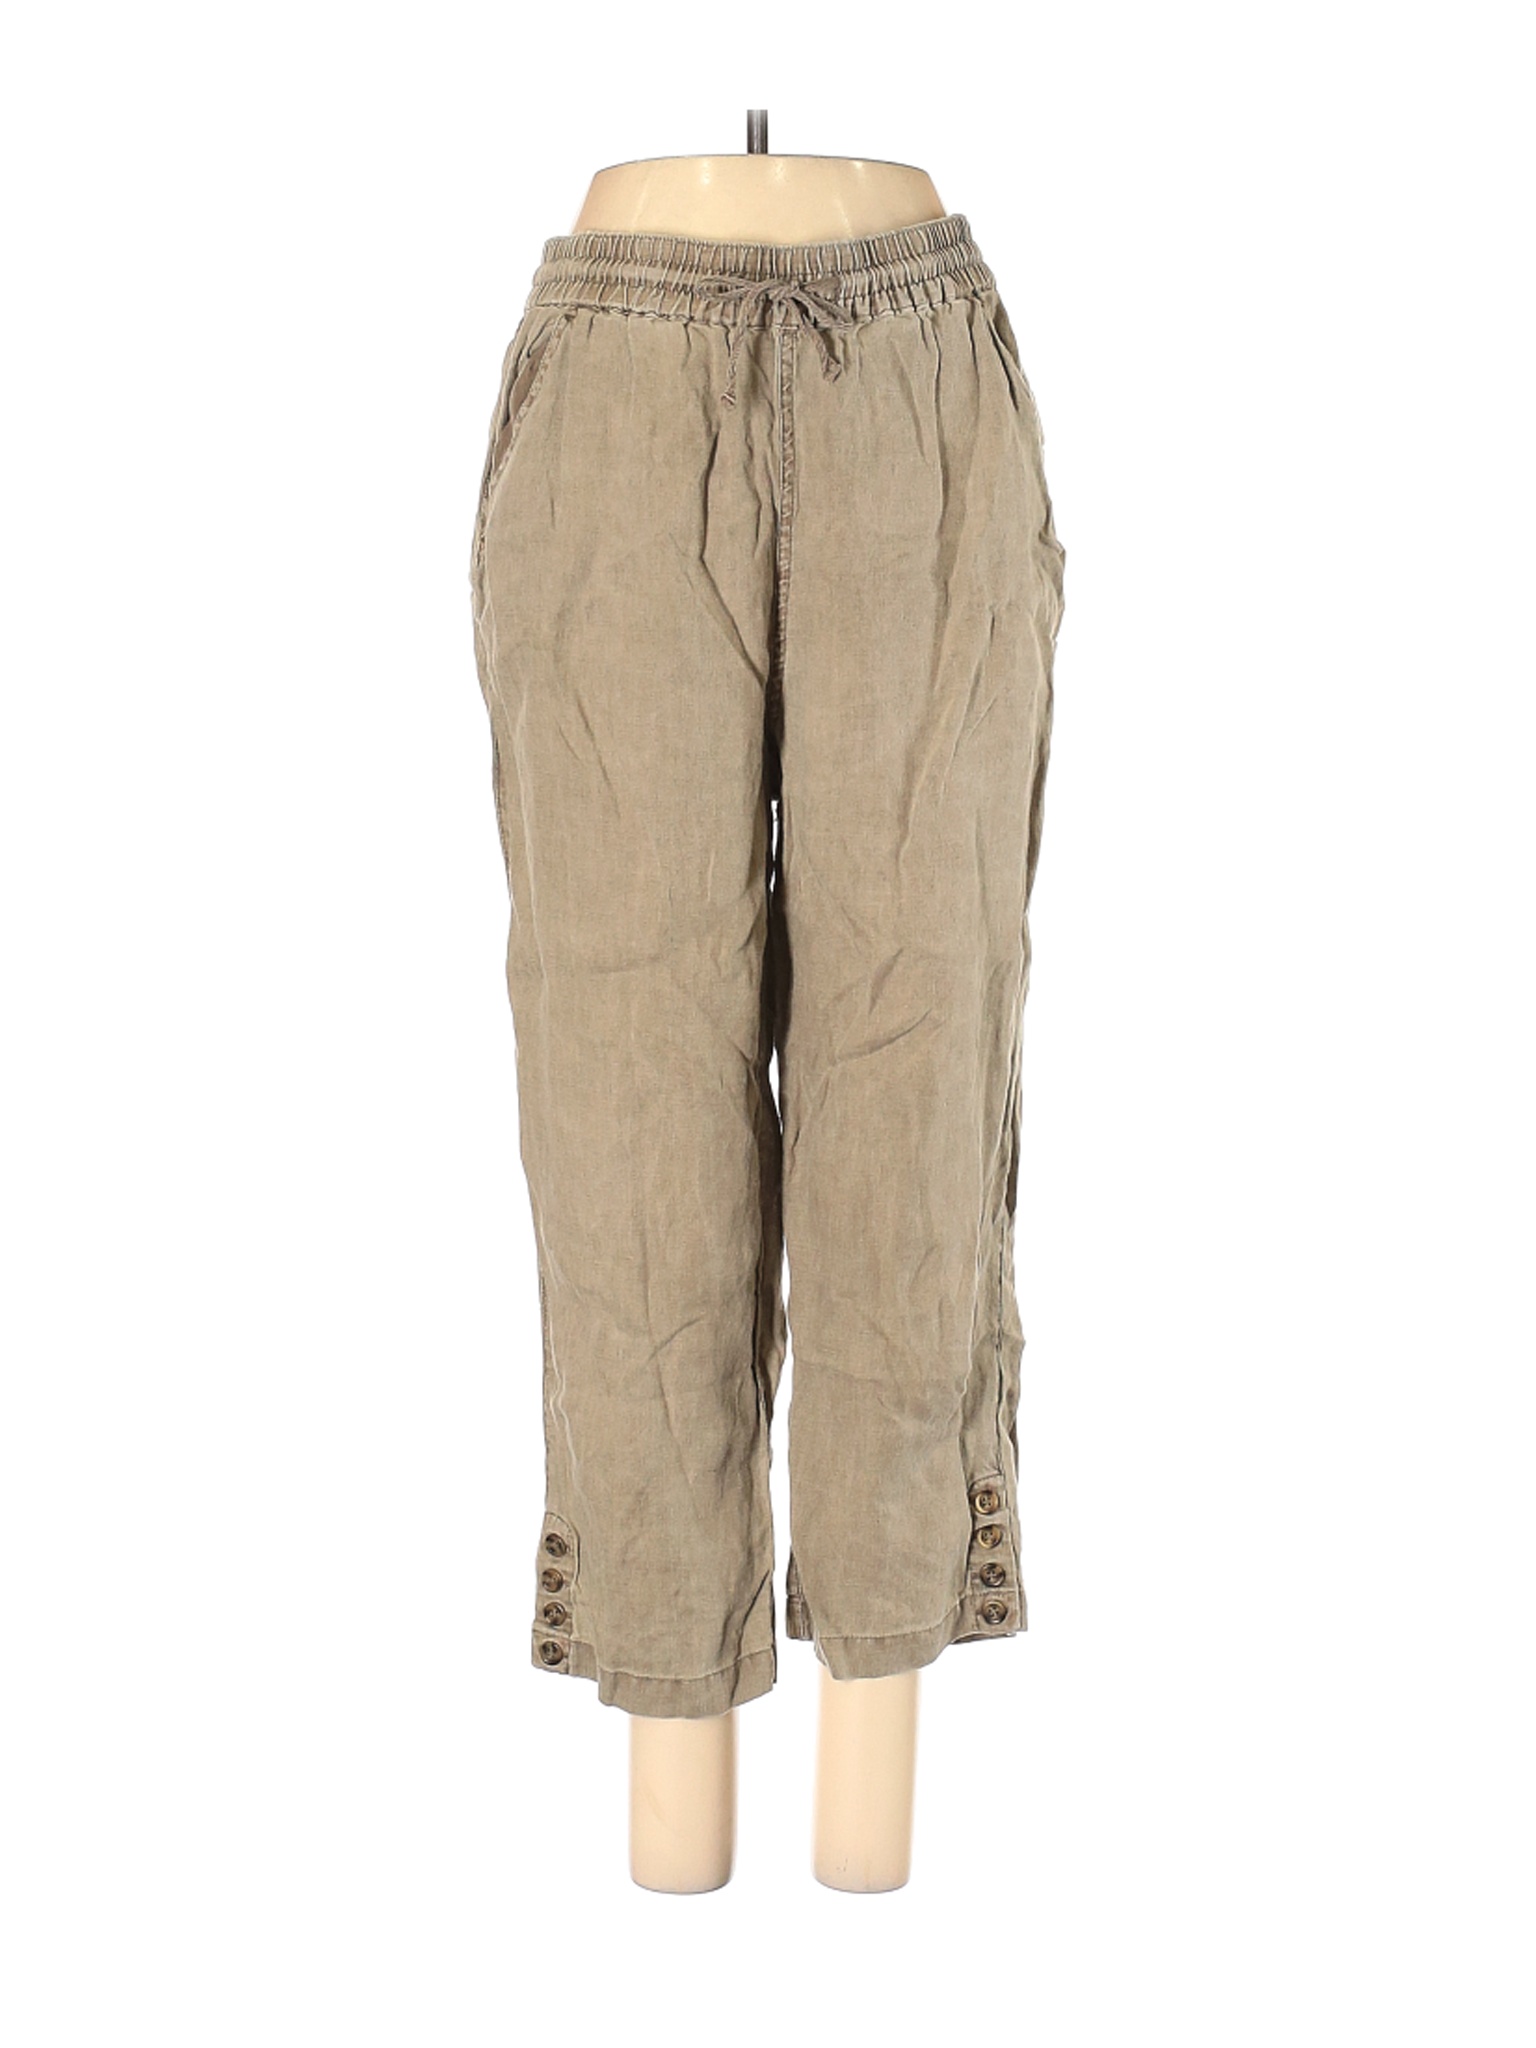 Nicole Miller New York Women Brown Linen Pants M | eBay